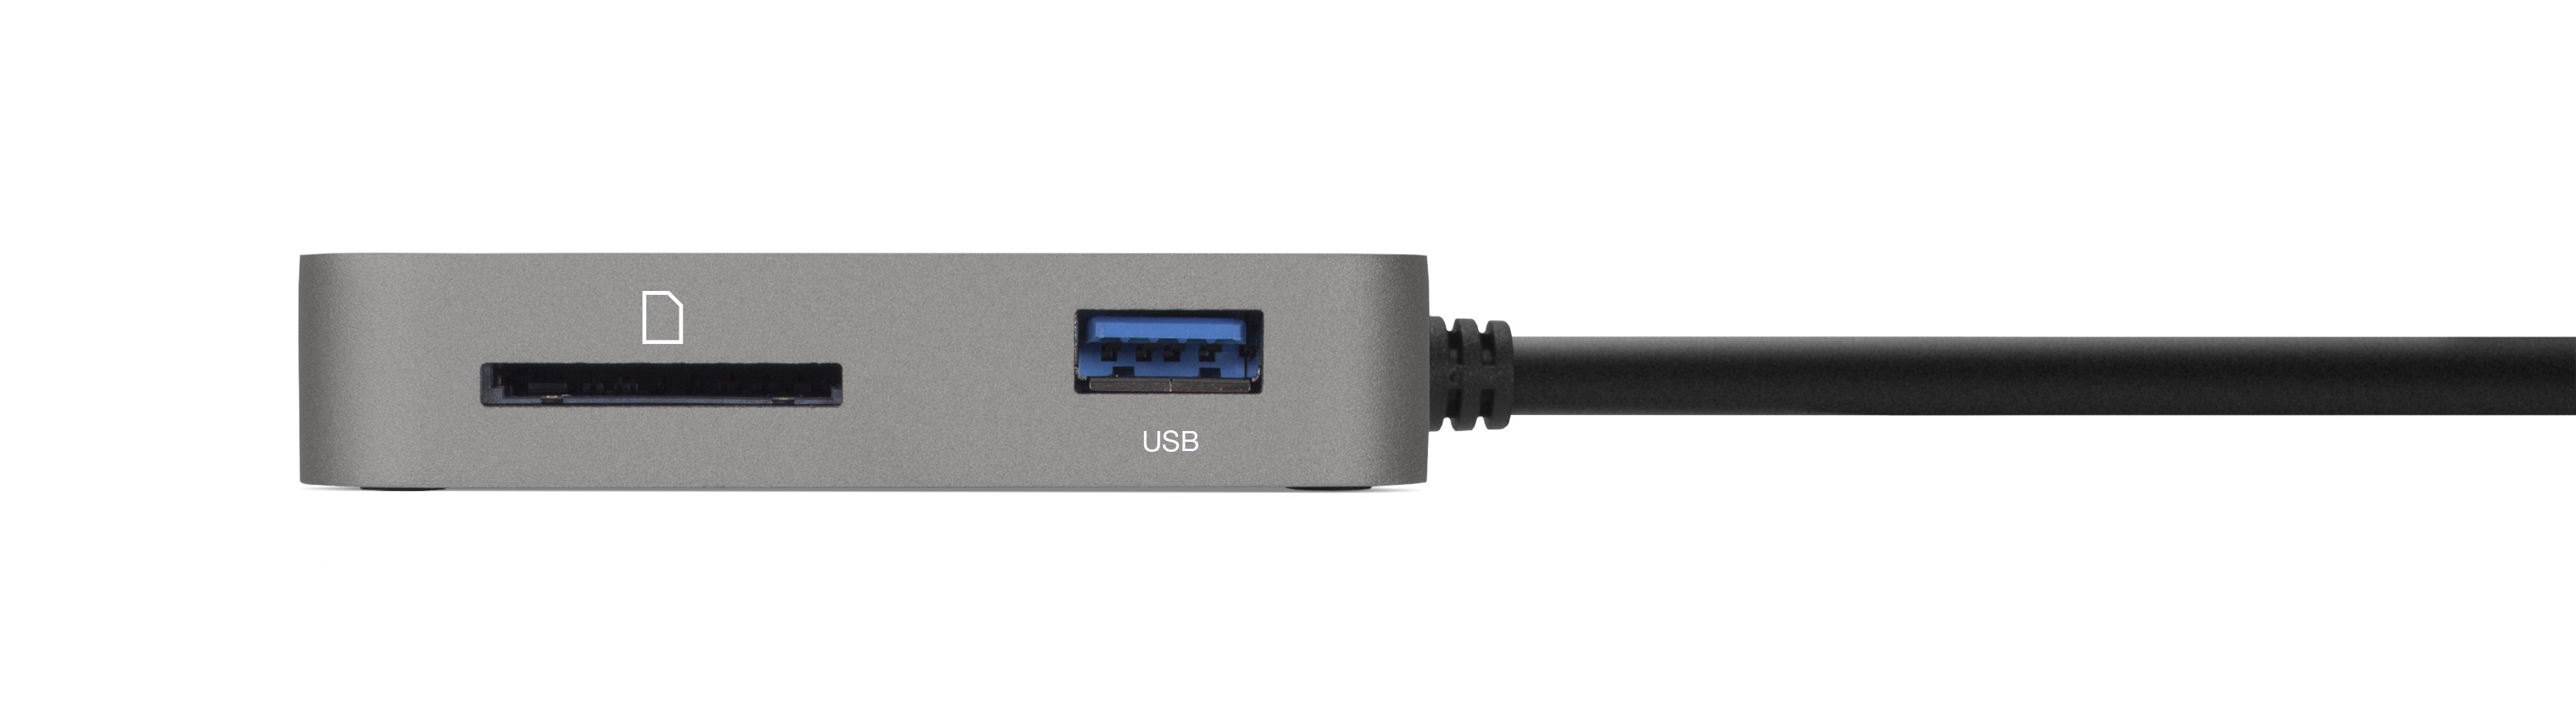 OWC USB-C Travel Dock - Side Space Gray 300 dpi